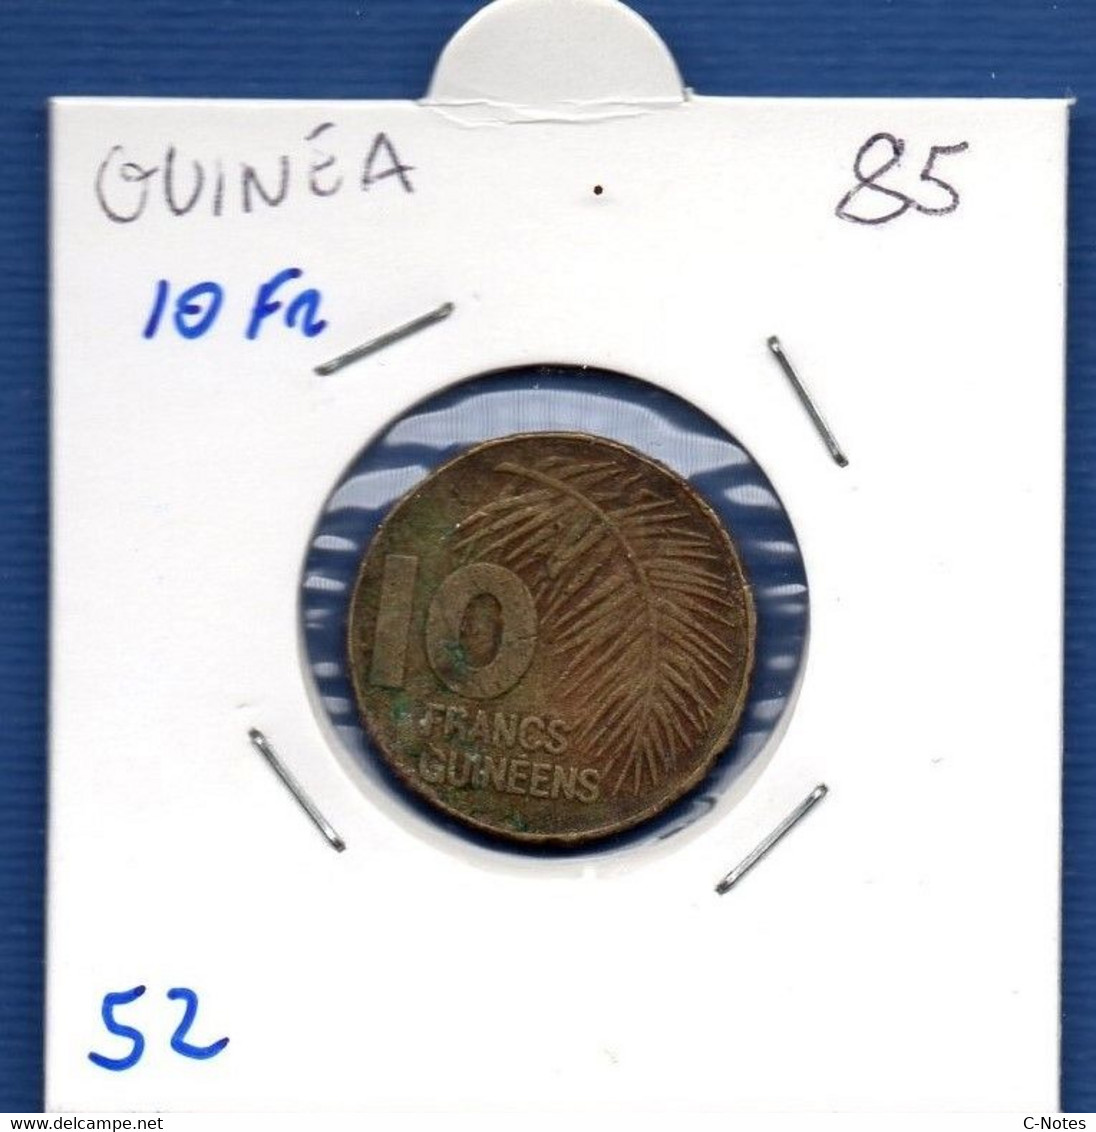 Guinea - 10 Francs 1985 -  See Photos -  Km 52 - Guinée